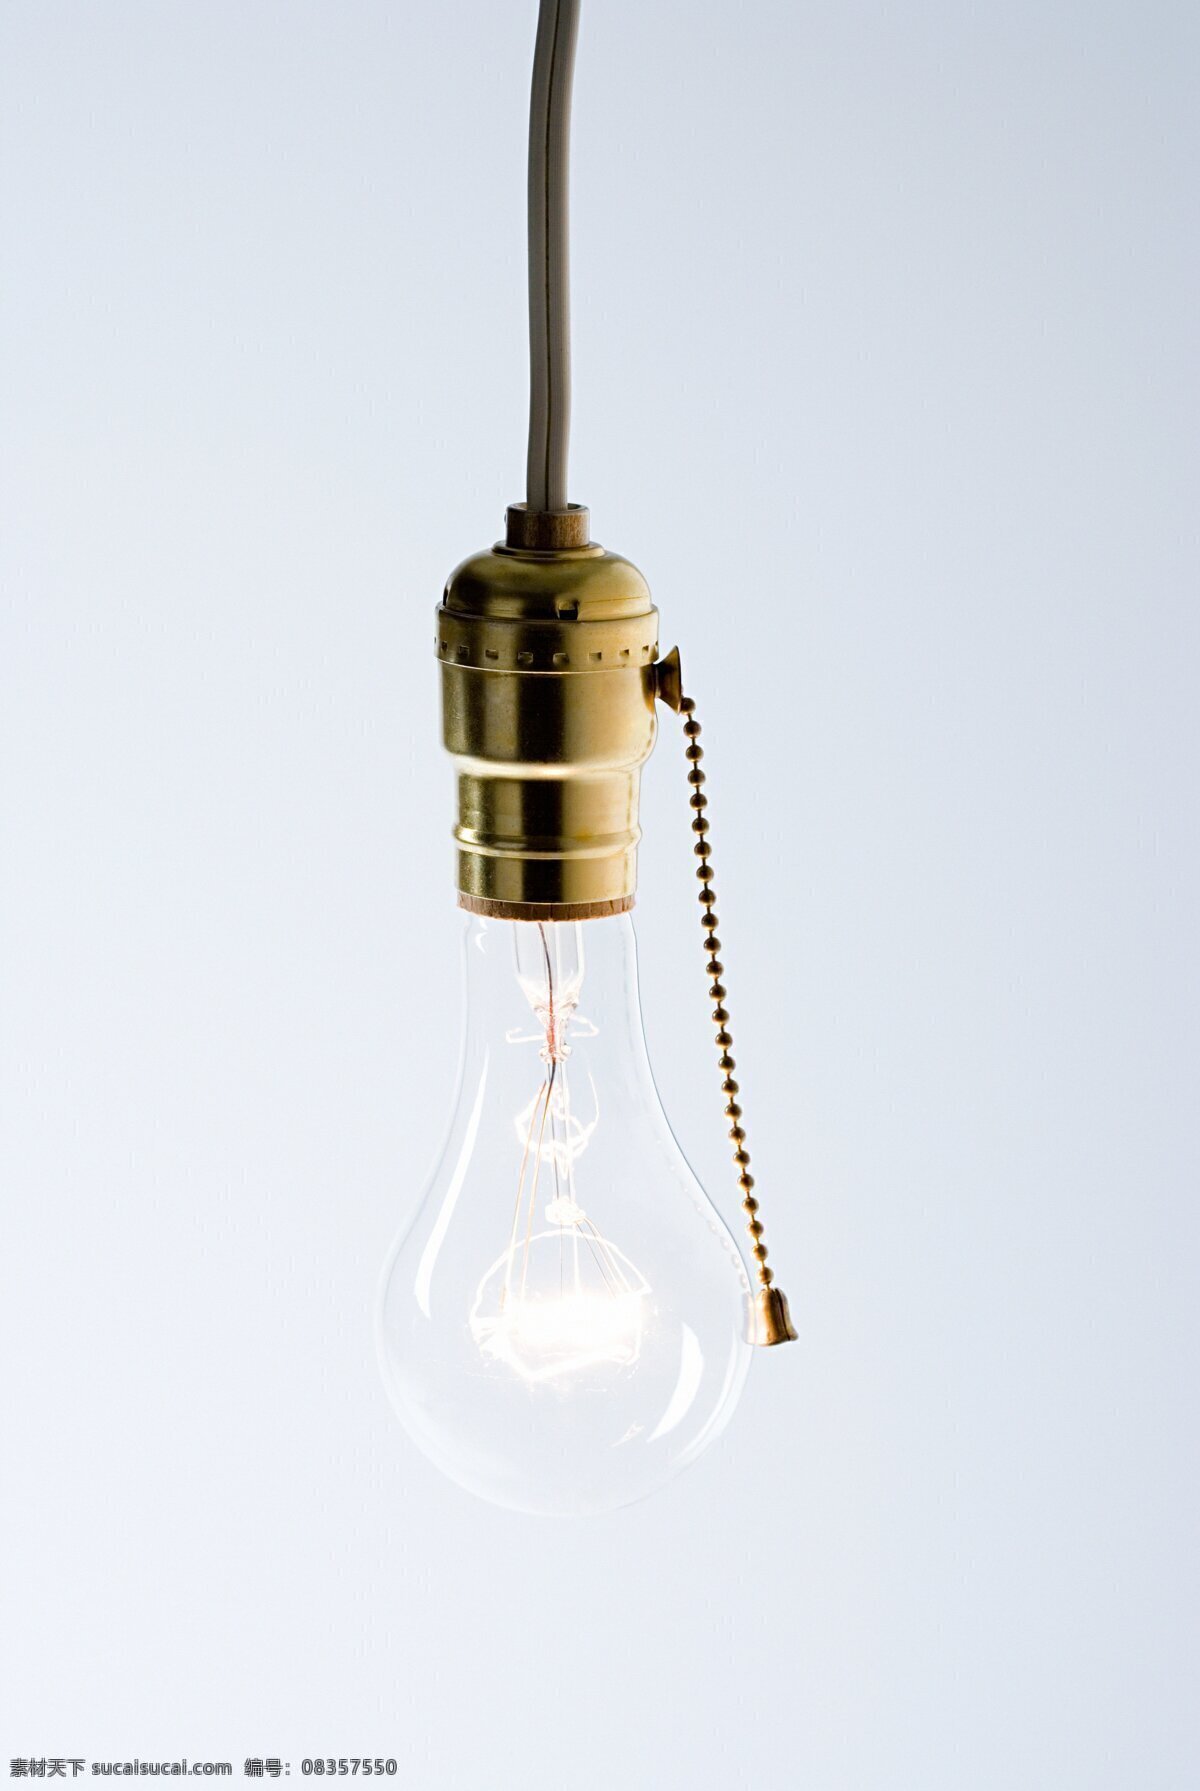 一个 照明 灯泡 特写 灯 灯座 一个灯泡 电 家庭用品 电线 拉线 玻璃 透明 高清图片 办公学习 生活百科